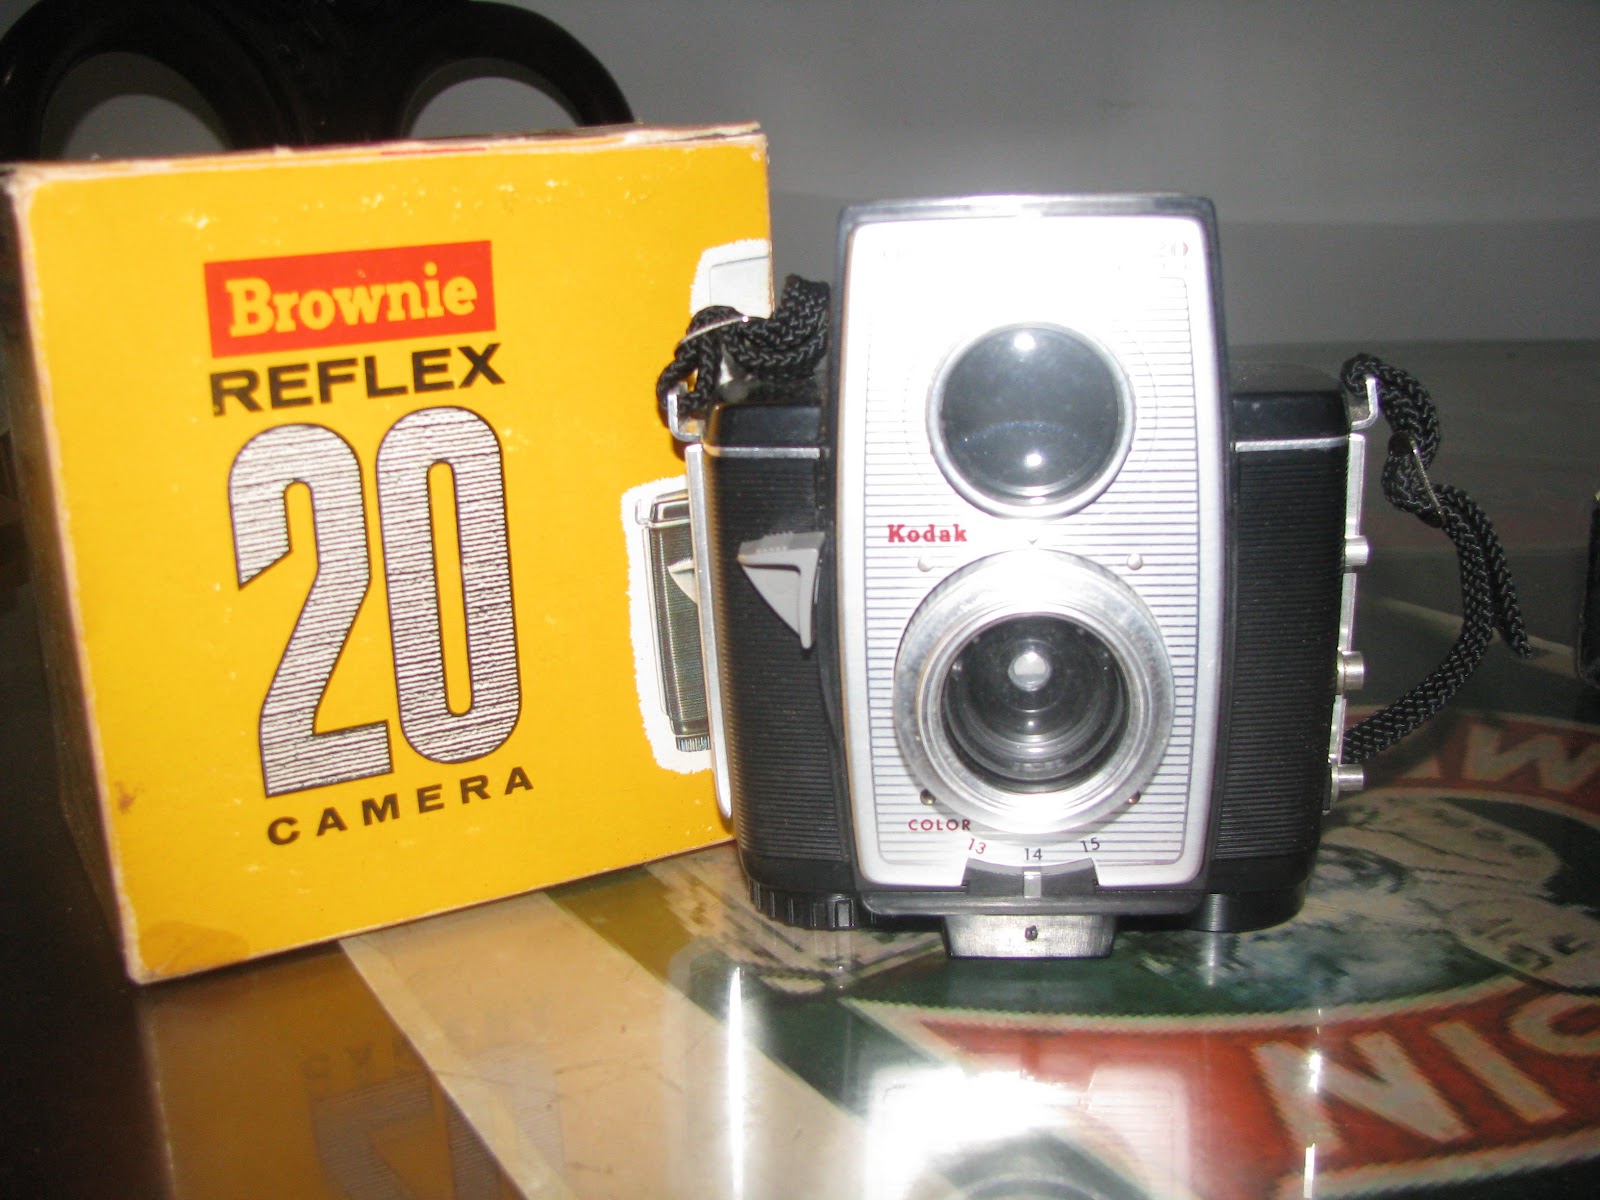 Kodak Brownie Reflex 20 diperkenalkan pertama